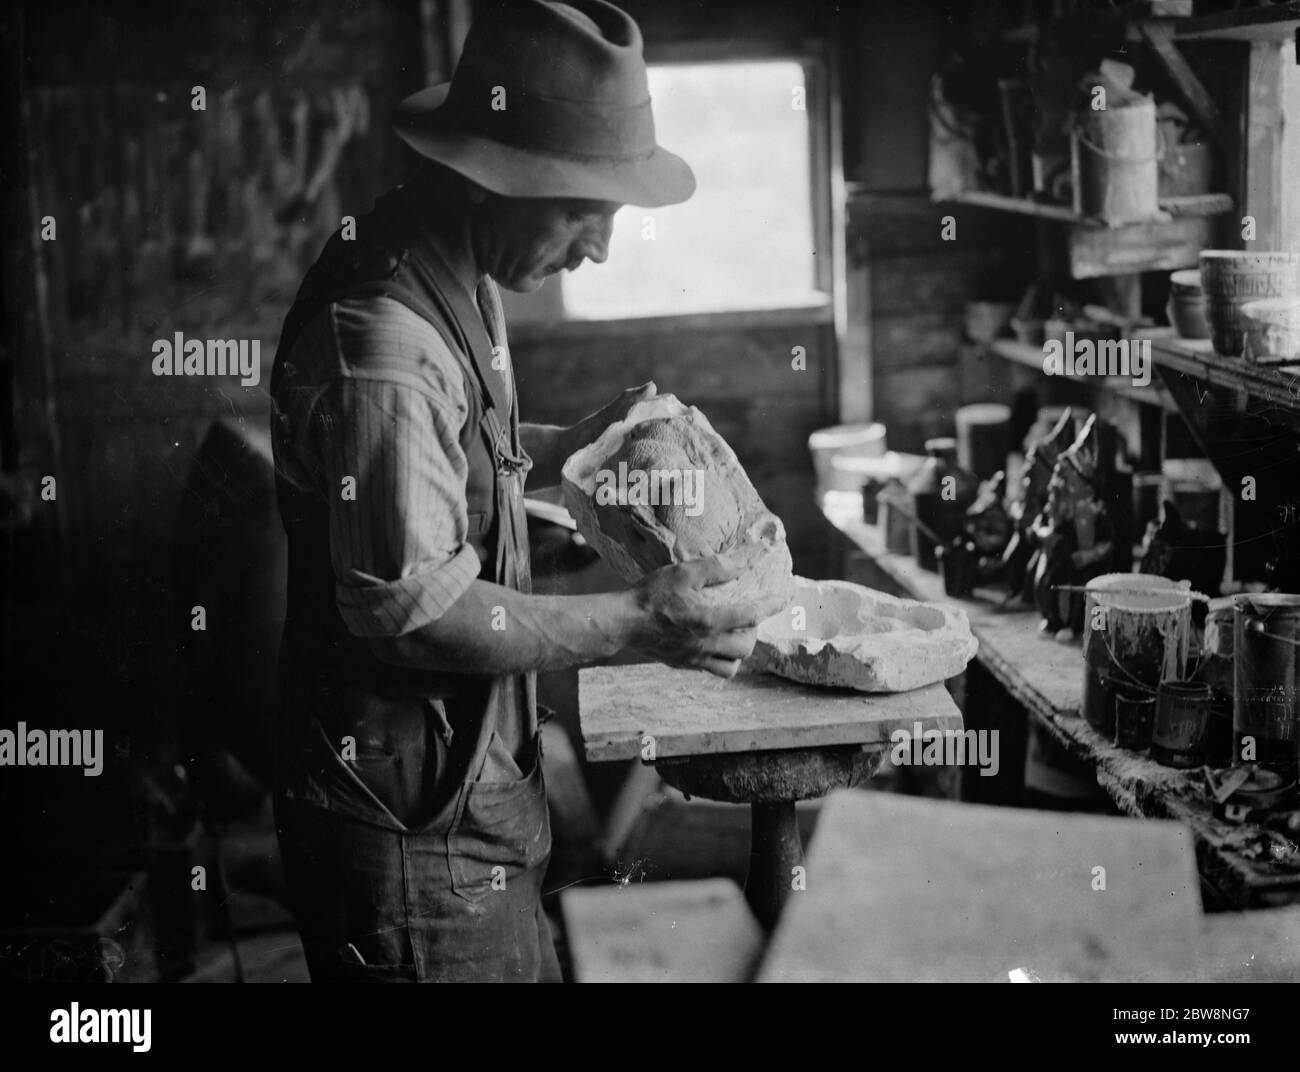 El Sr. Sadler, fabricante de alfarería, llenando los lados de un molde de conejo con arcilla. 1938 Foto de stock